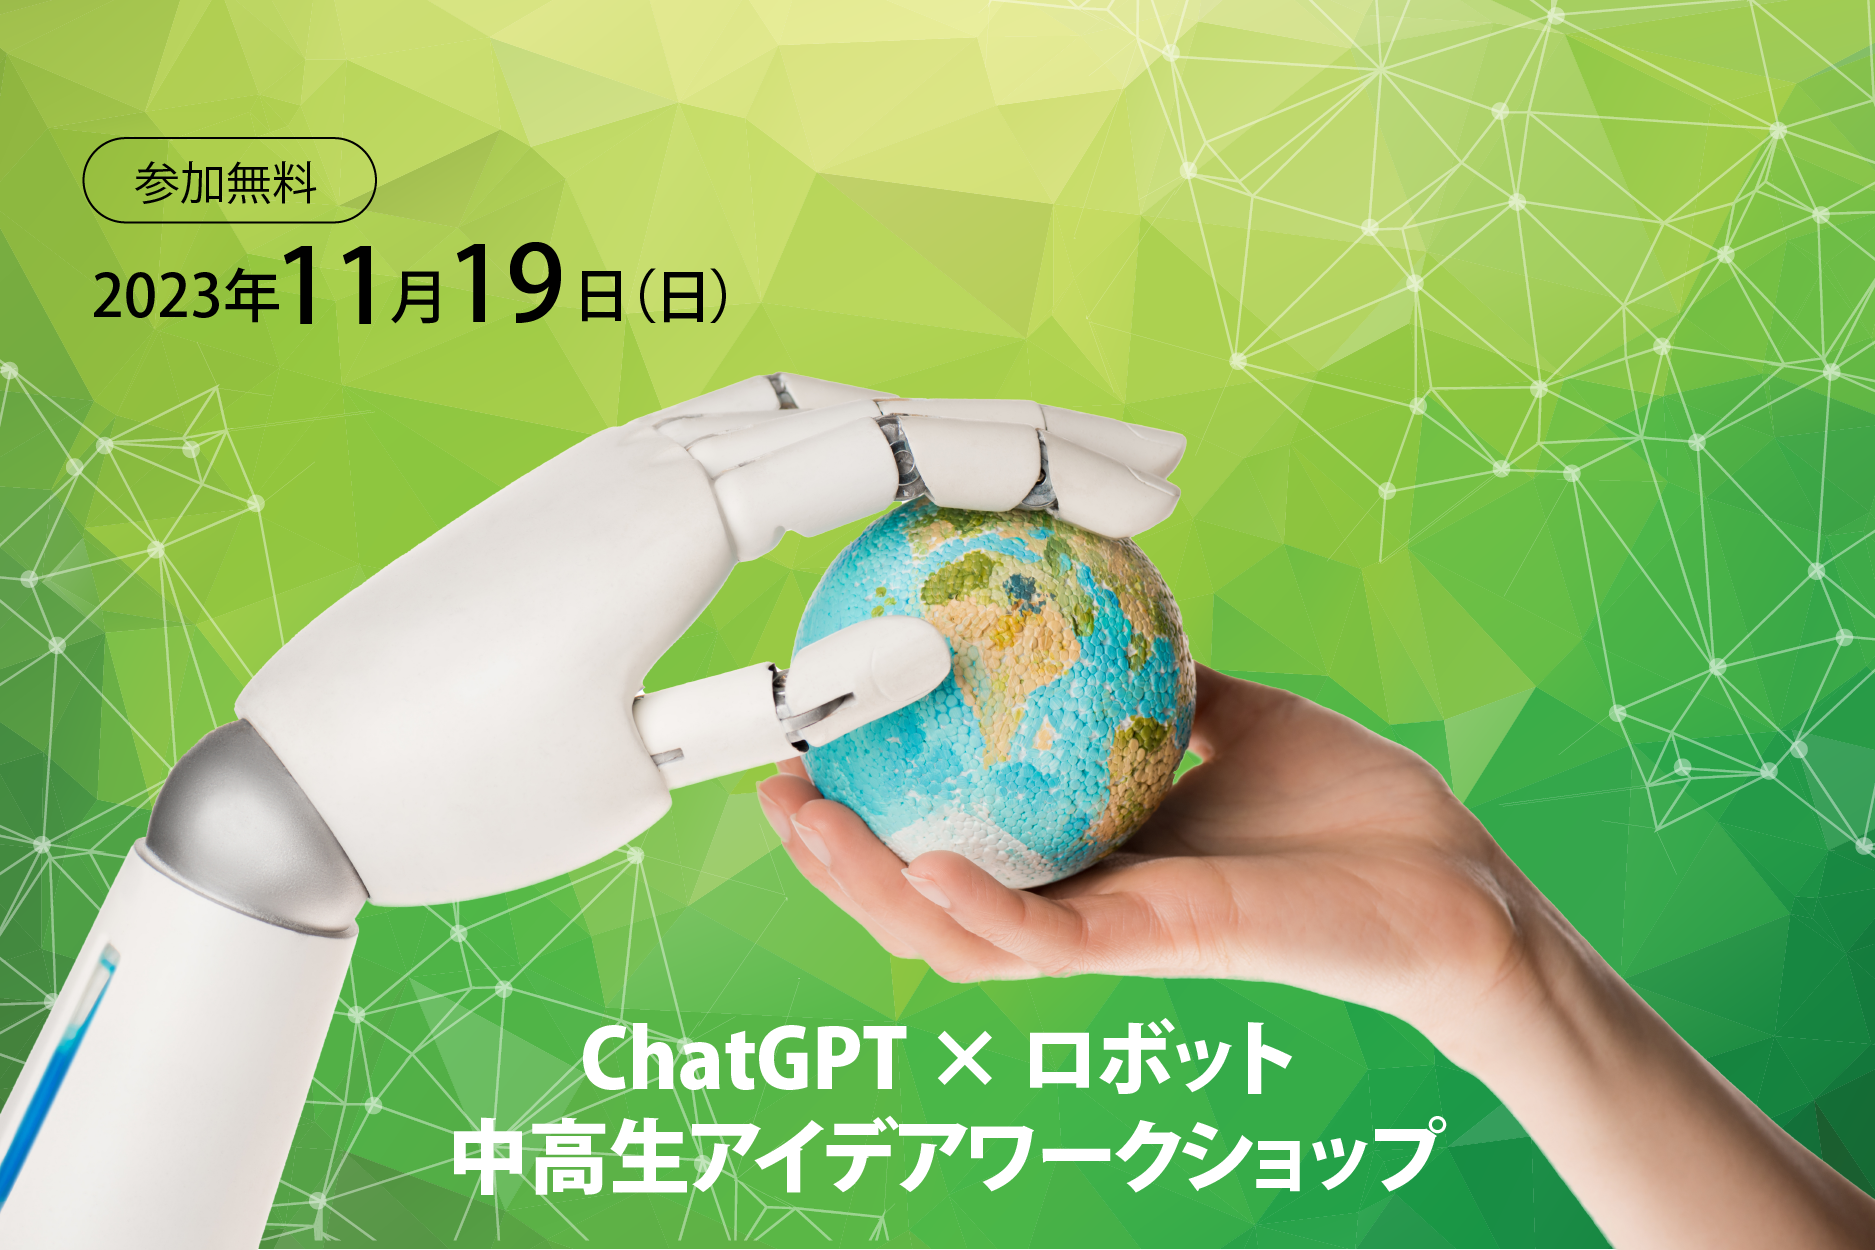 【11/19(日)開催】ChatGPT x ロボット 中高生アイデアワークショップ